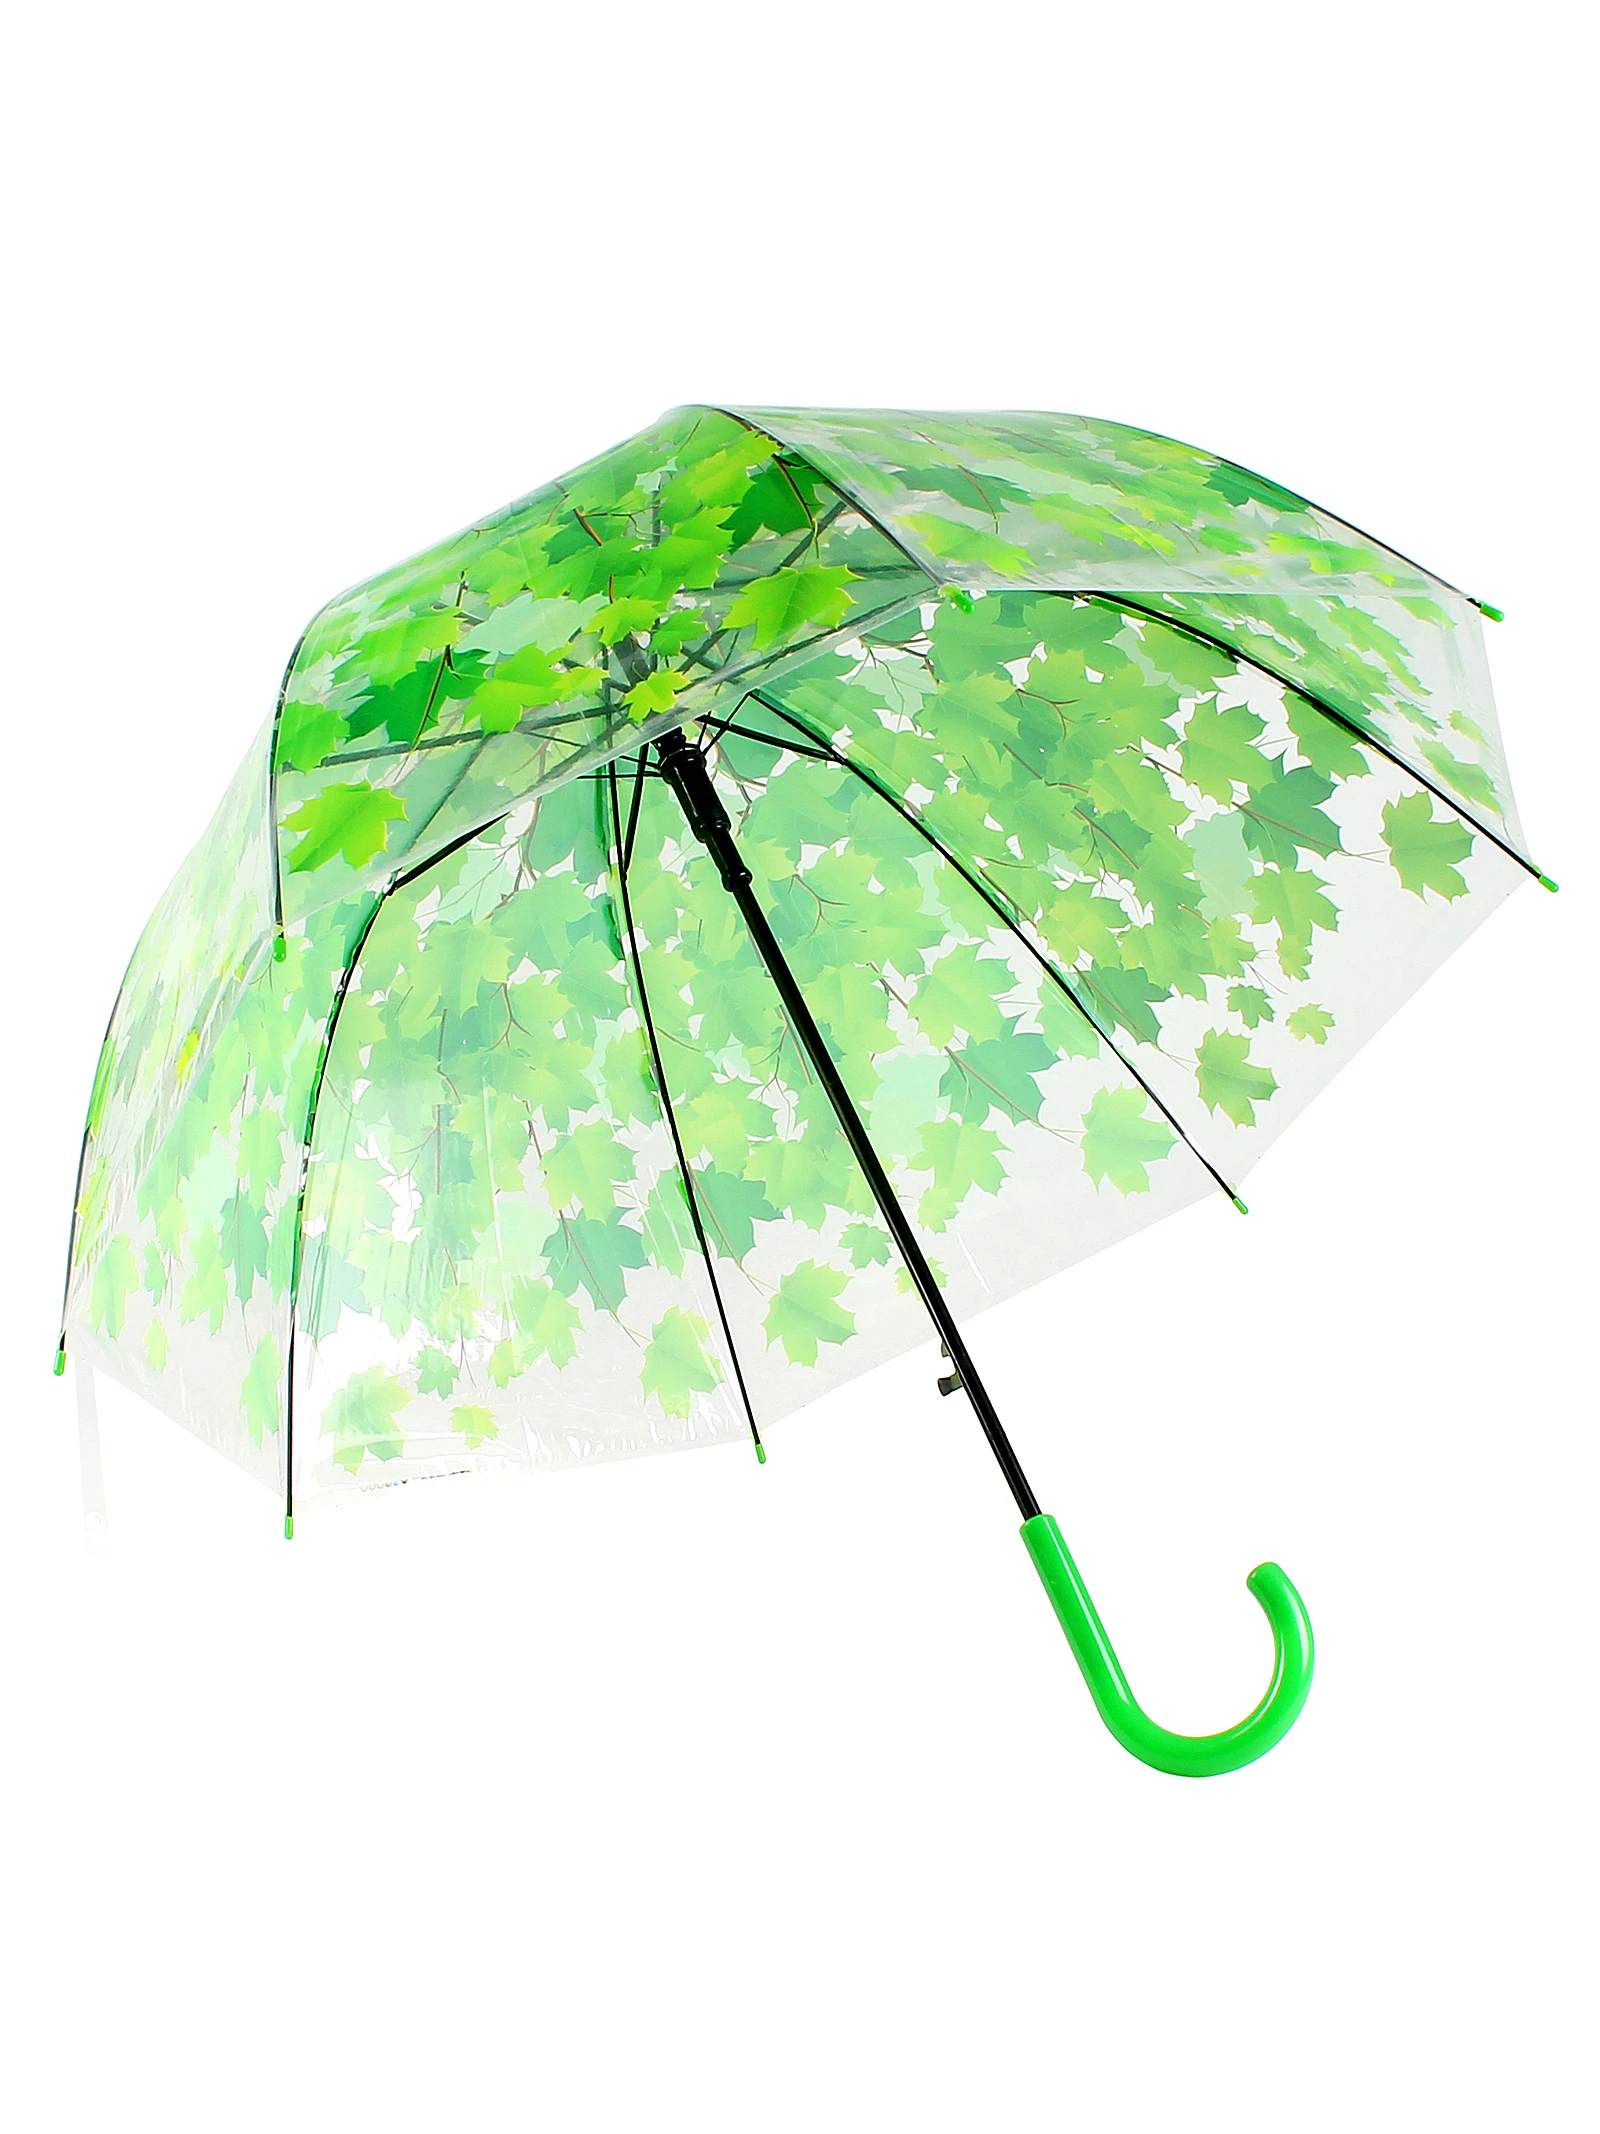 Весенний зонтик. Зонт-трость Мультидом желтый. Зонт Эврика зеленый. Зонтик с листьями. Зонт листья зеленые.